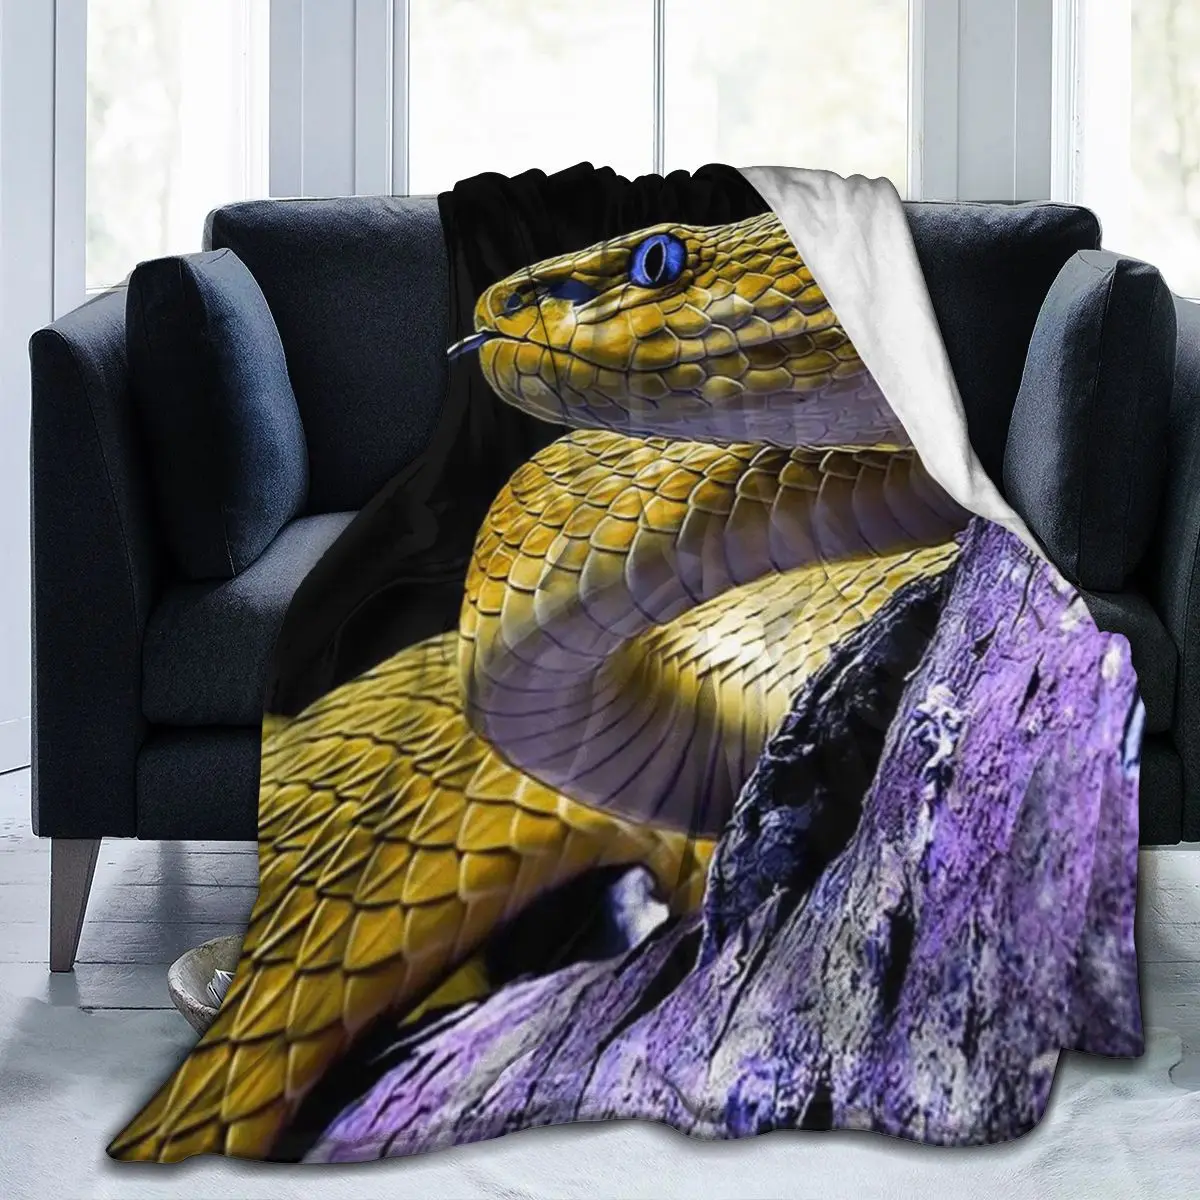 

Manta с 3D узором в виде змеи, узорная с узором в виде животных, одежда в стиле ретро, suave, cuadrada, de lana для пикника